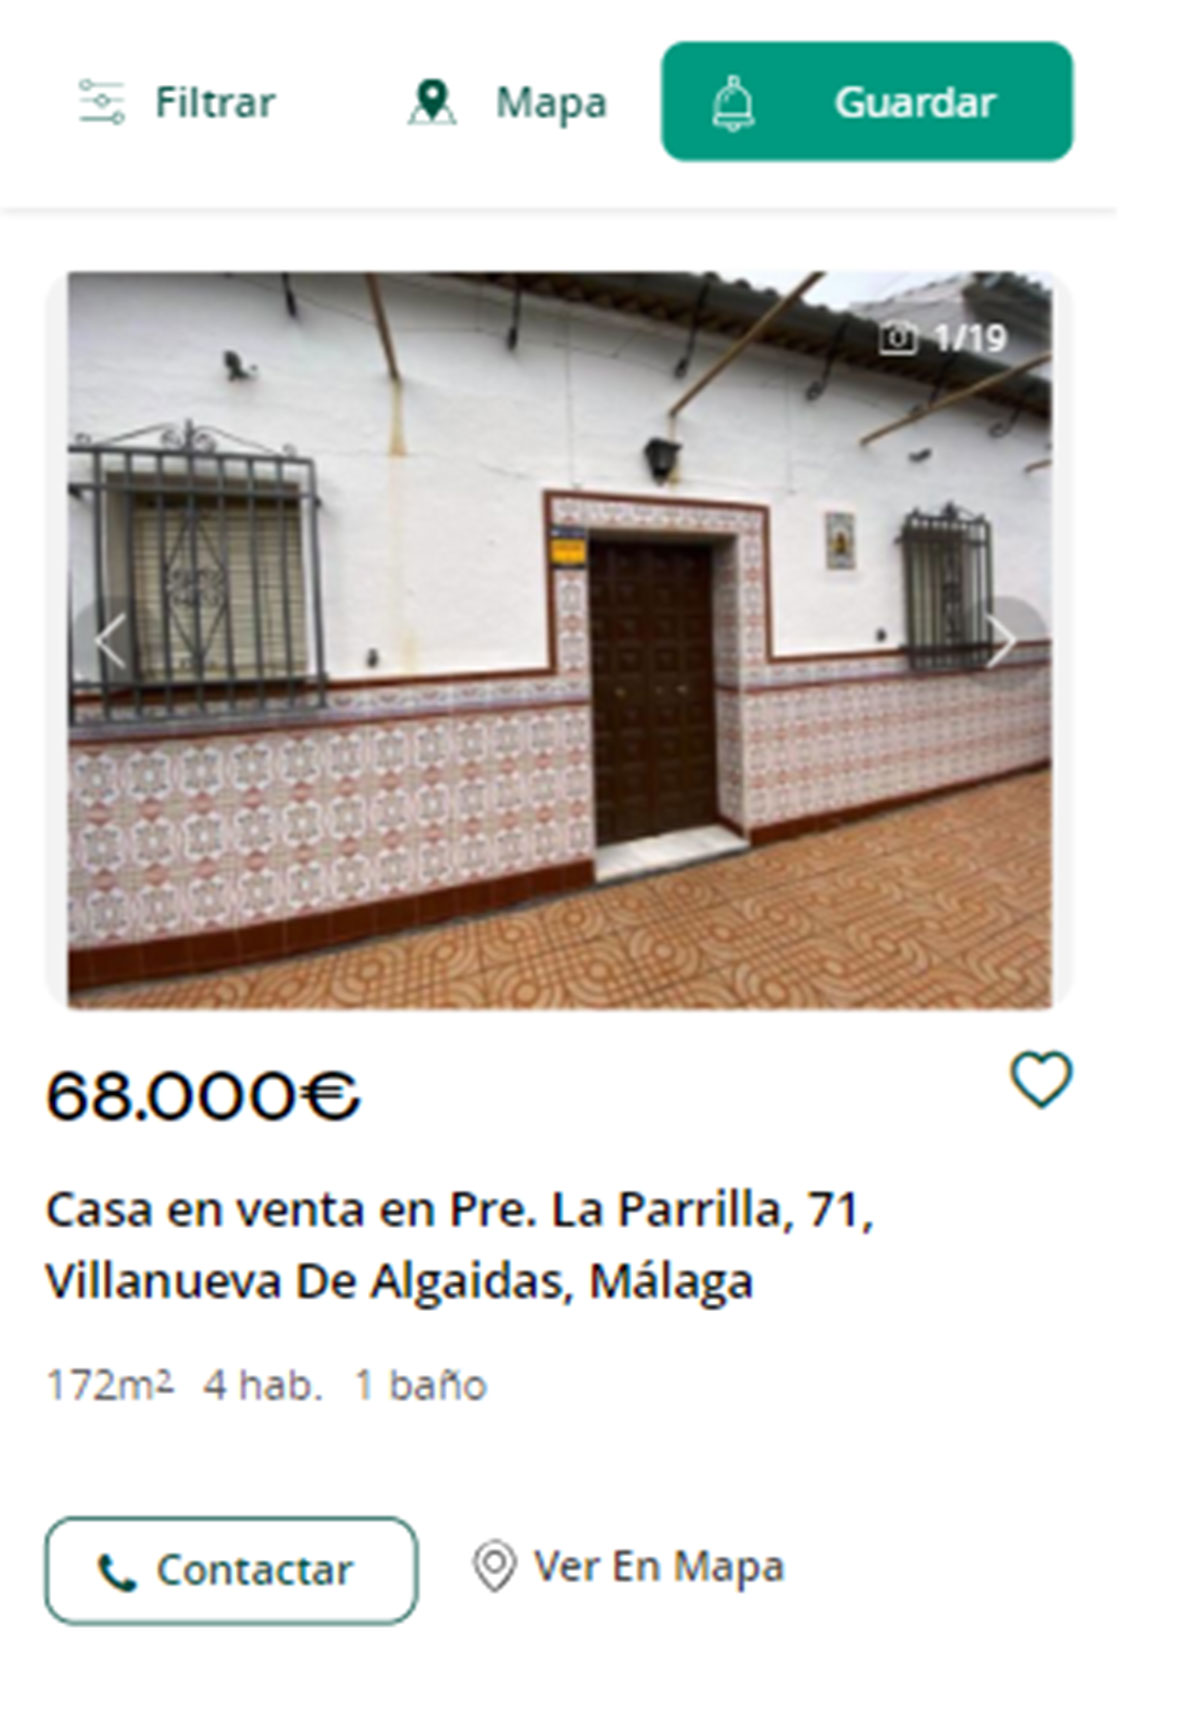 Piso a la venta en Málaga por 68.000 euros